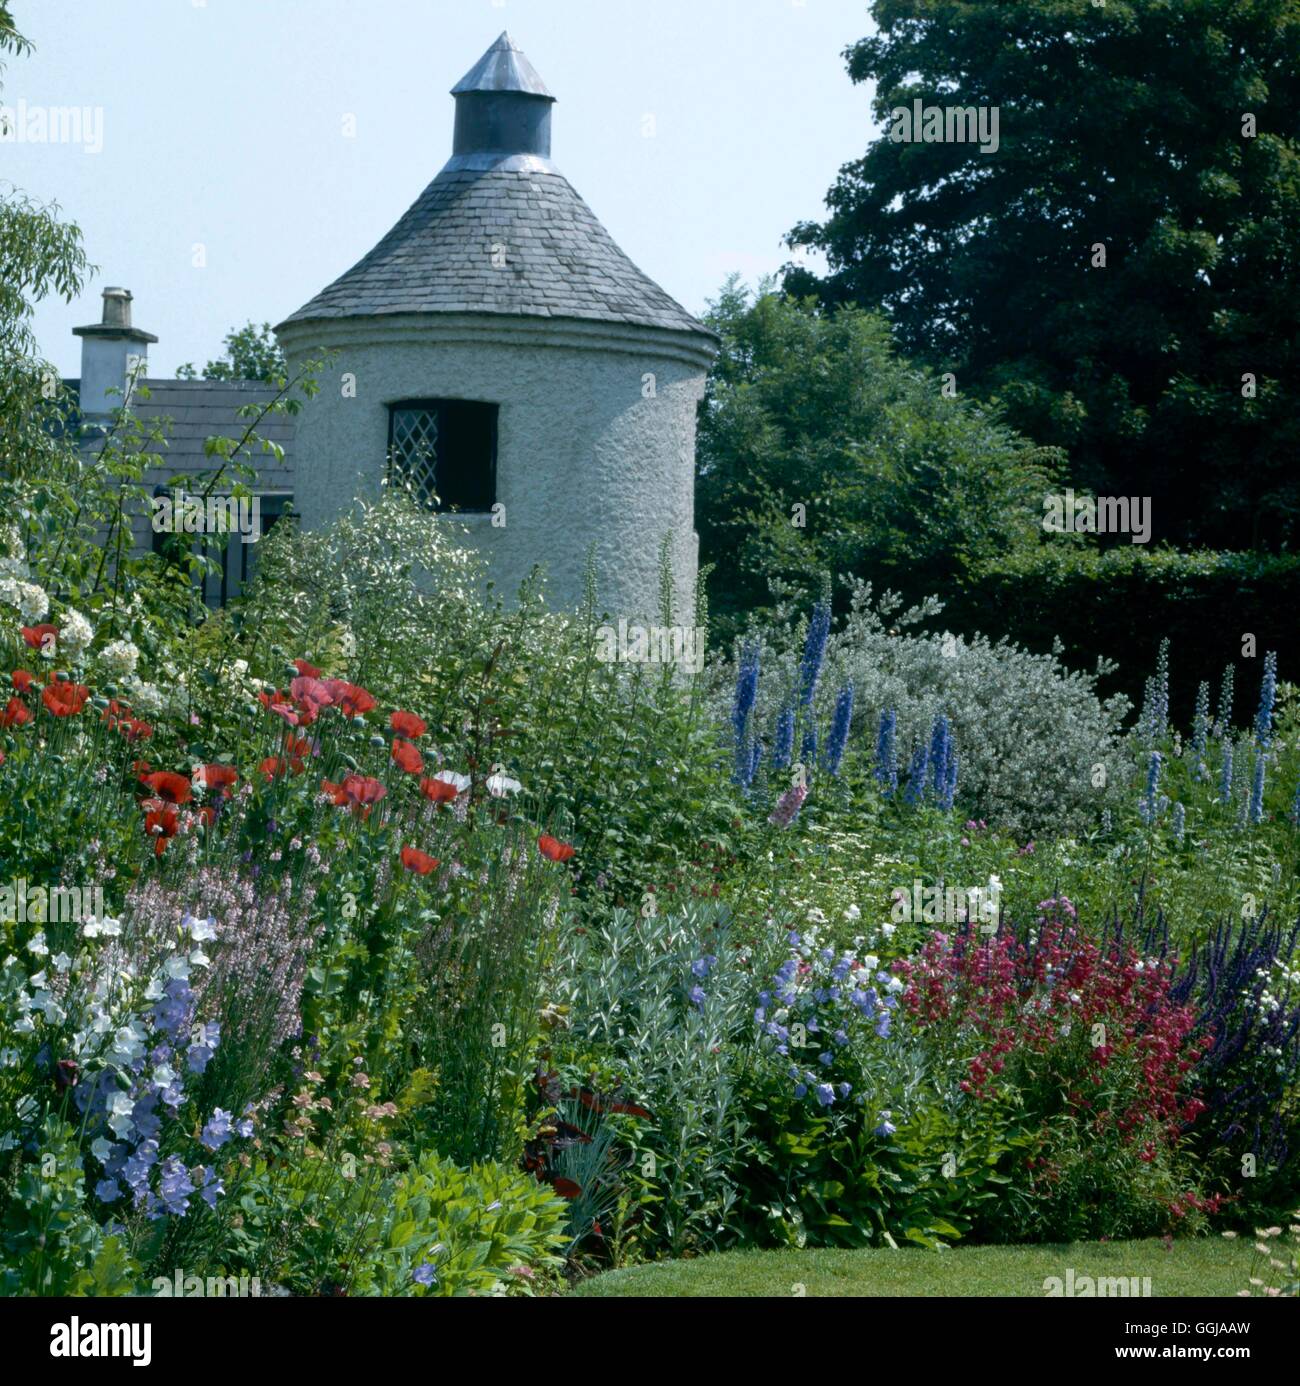 Butterstream Gärten - trimmen Co Meath Ireland Garten von Jim Reynolds - Kredit bitte Lage GDN063136 Compulsor Stockfoto